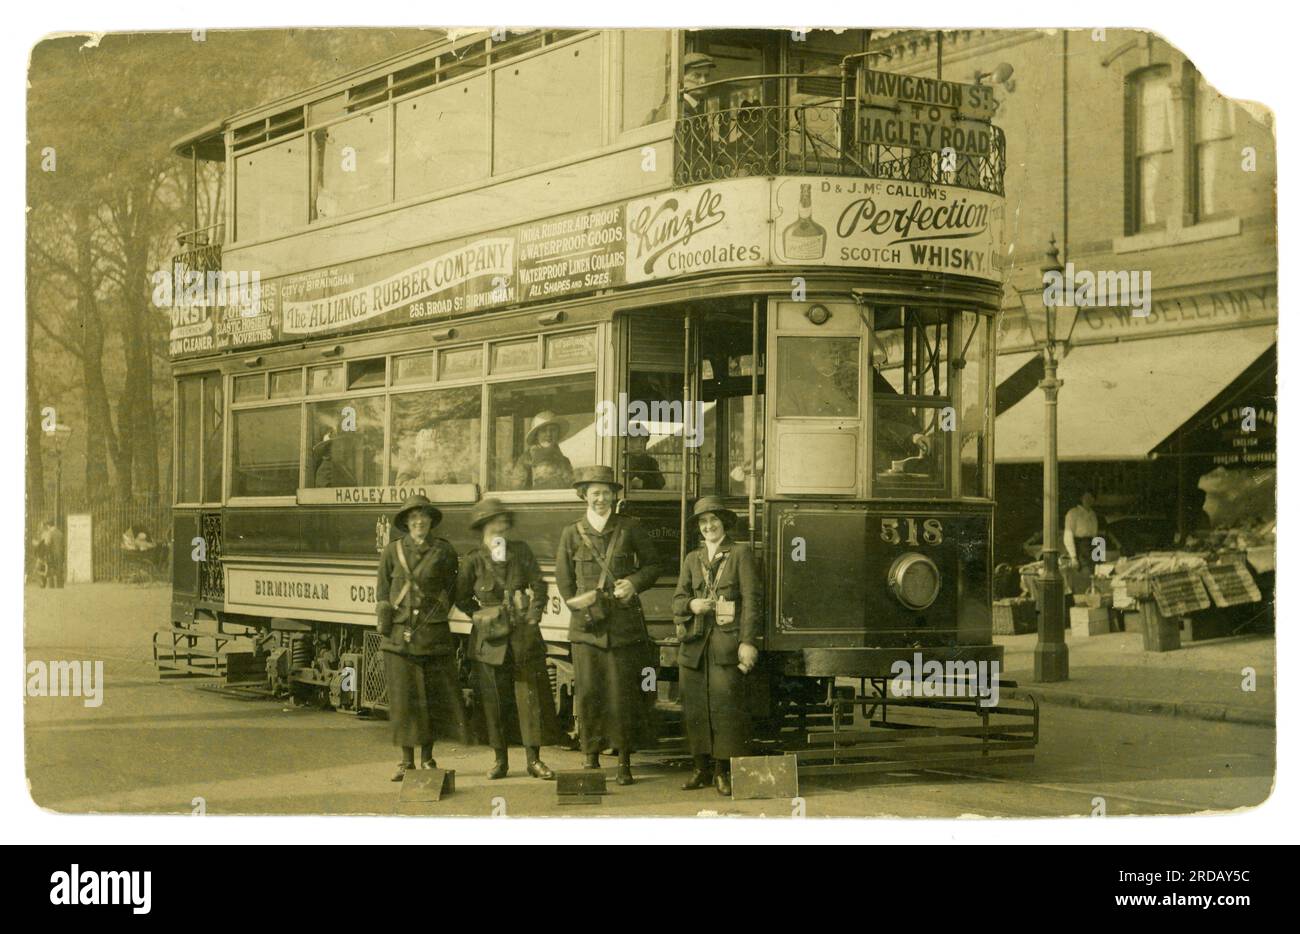 Cartolina originale dell'era della prima guerra mondiale di direttori di tram donne, forse nuove reclute, felici e sorridenti, che lavoravano in servizio come direttori di tram che aiutavano lo sforzo bellico, sul tram di Hagley Road, il percorso della linea del tram andava da Navigation St a Hagley Rd. La cartolina è stata spedita da Smethwick (che era sulla linea tranviaria) West Midlands, Birmingham, Staffordshire, Inghilterra, Regno Unito. Gestito dalla Birmingham and Midland Tramways Ltd Pubblicato / datato 23 ottobre 1915 Foto Stock